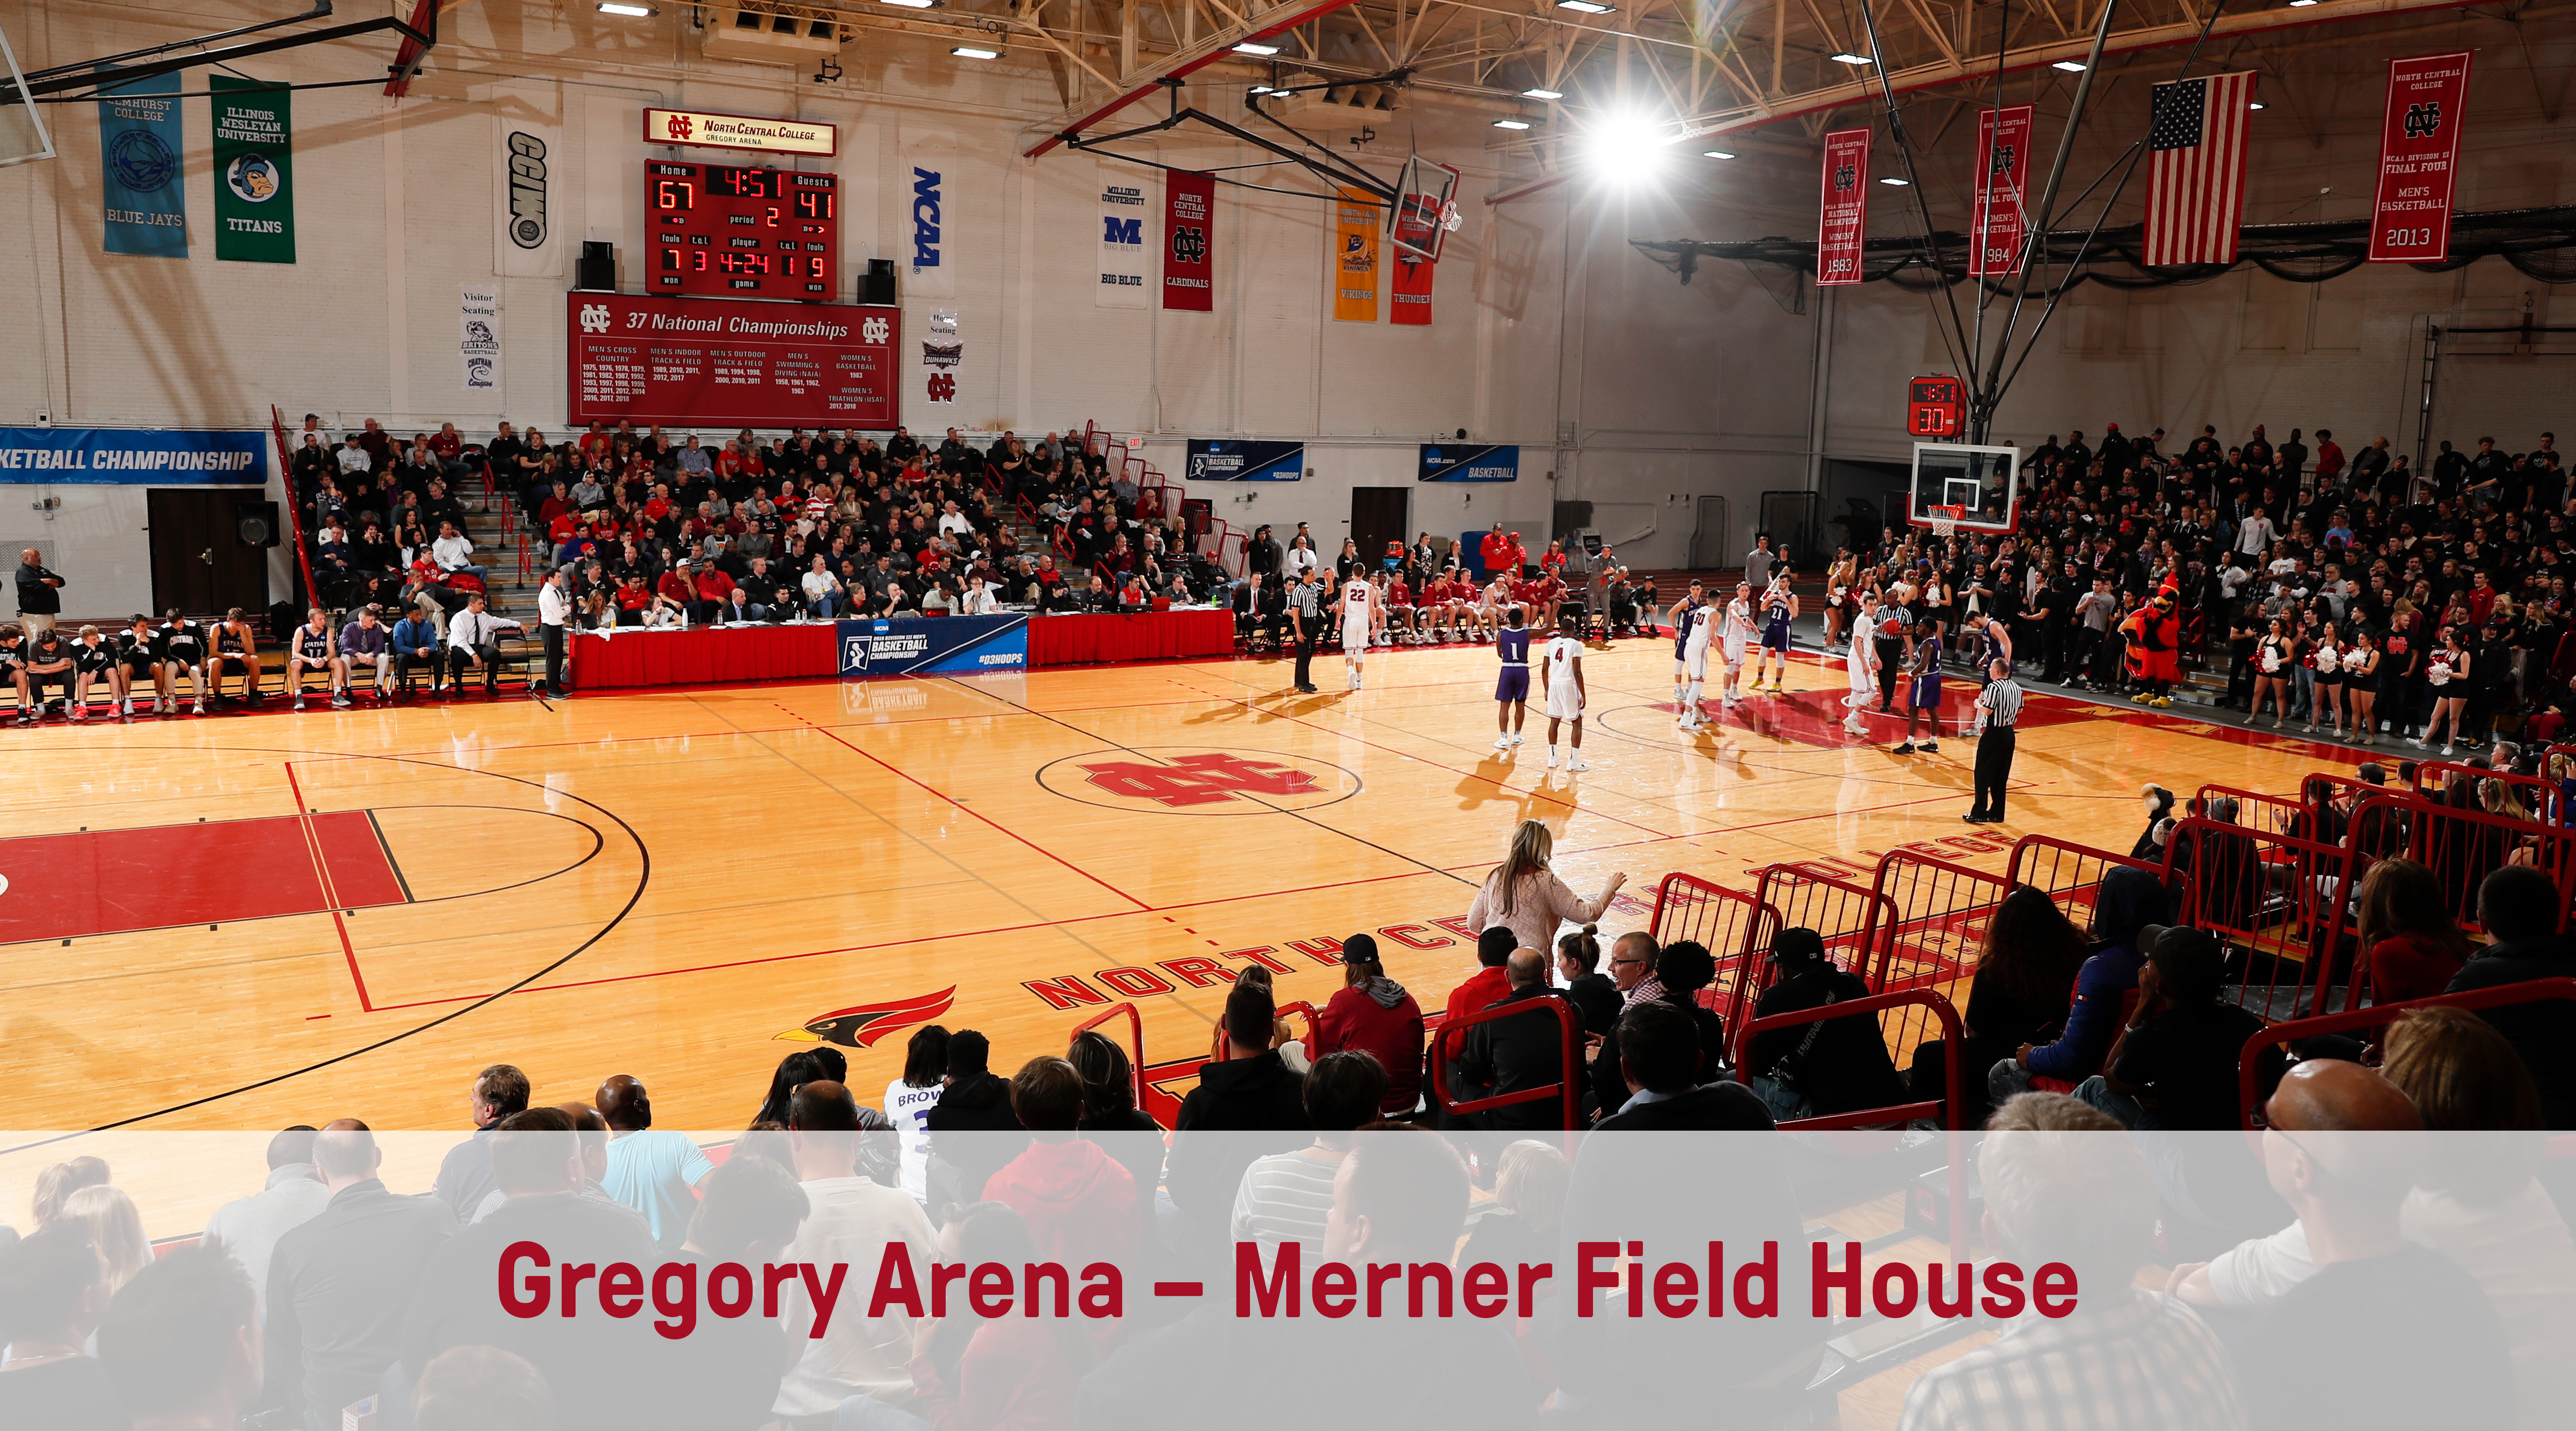 Gregory Arena – Merner Field House